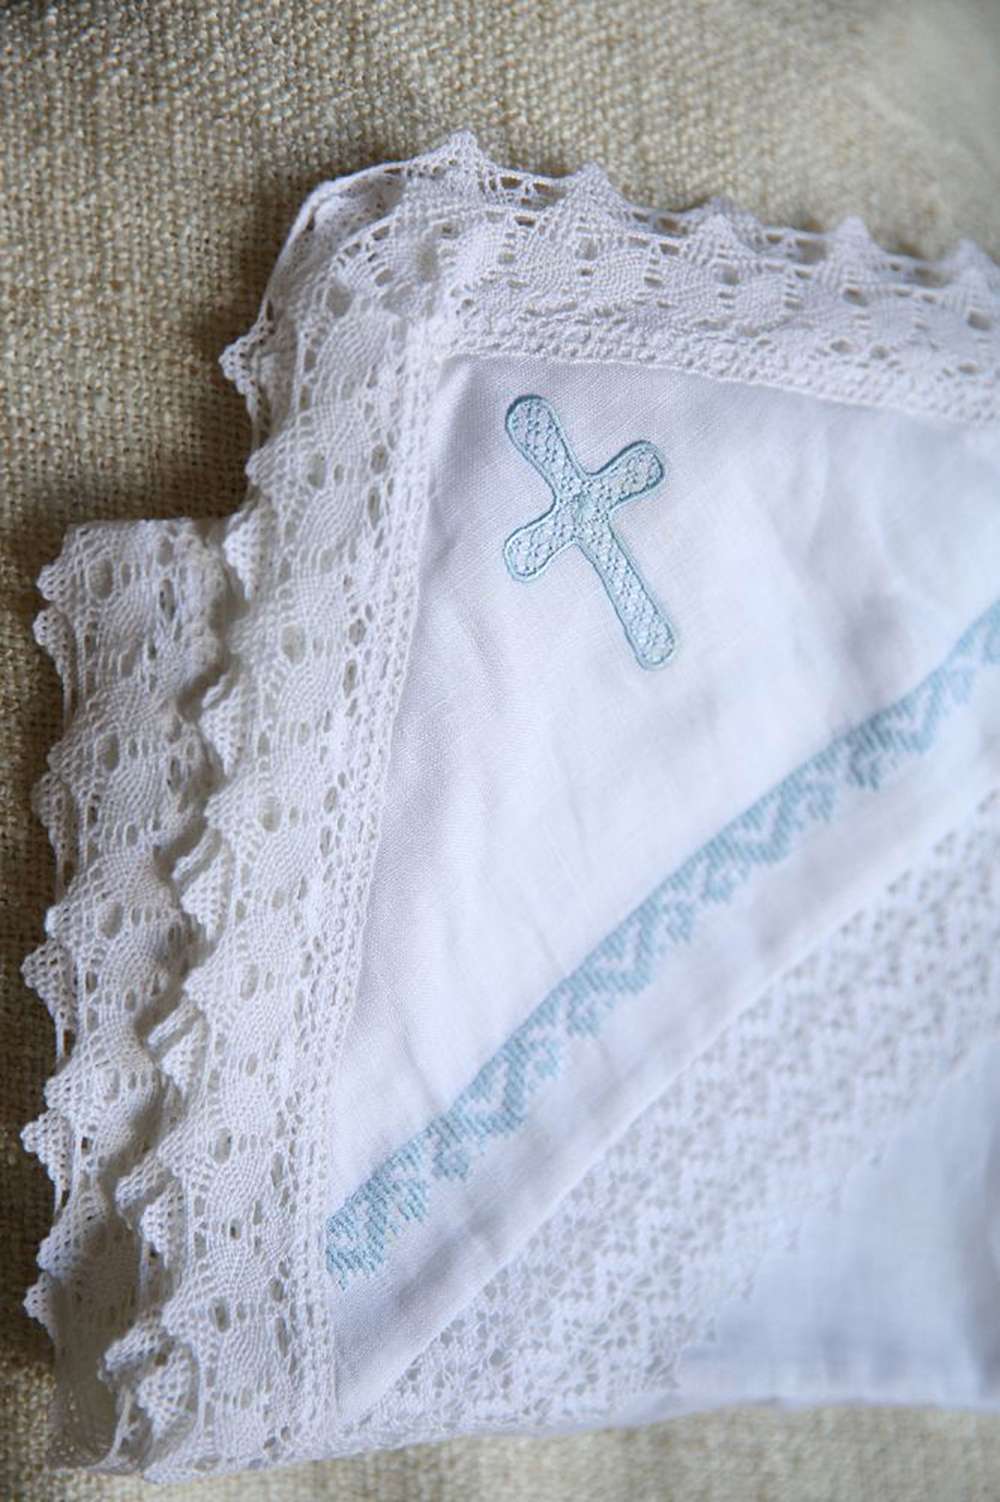 Baptism, christening blanket (Chrism)